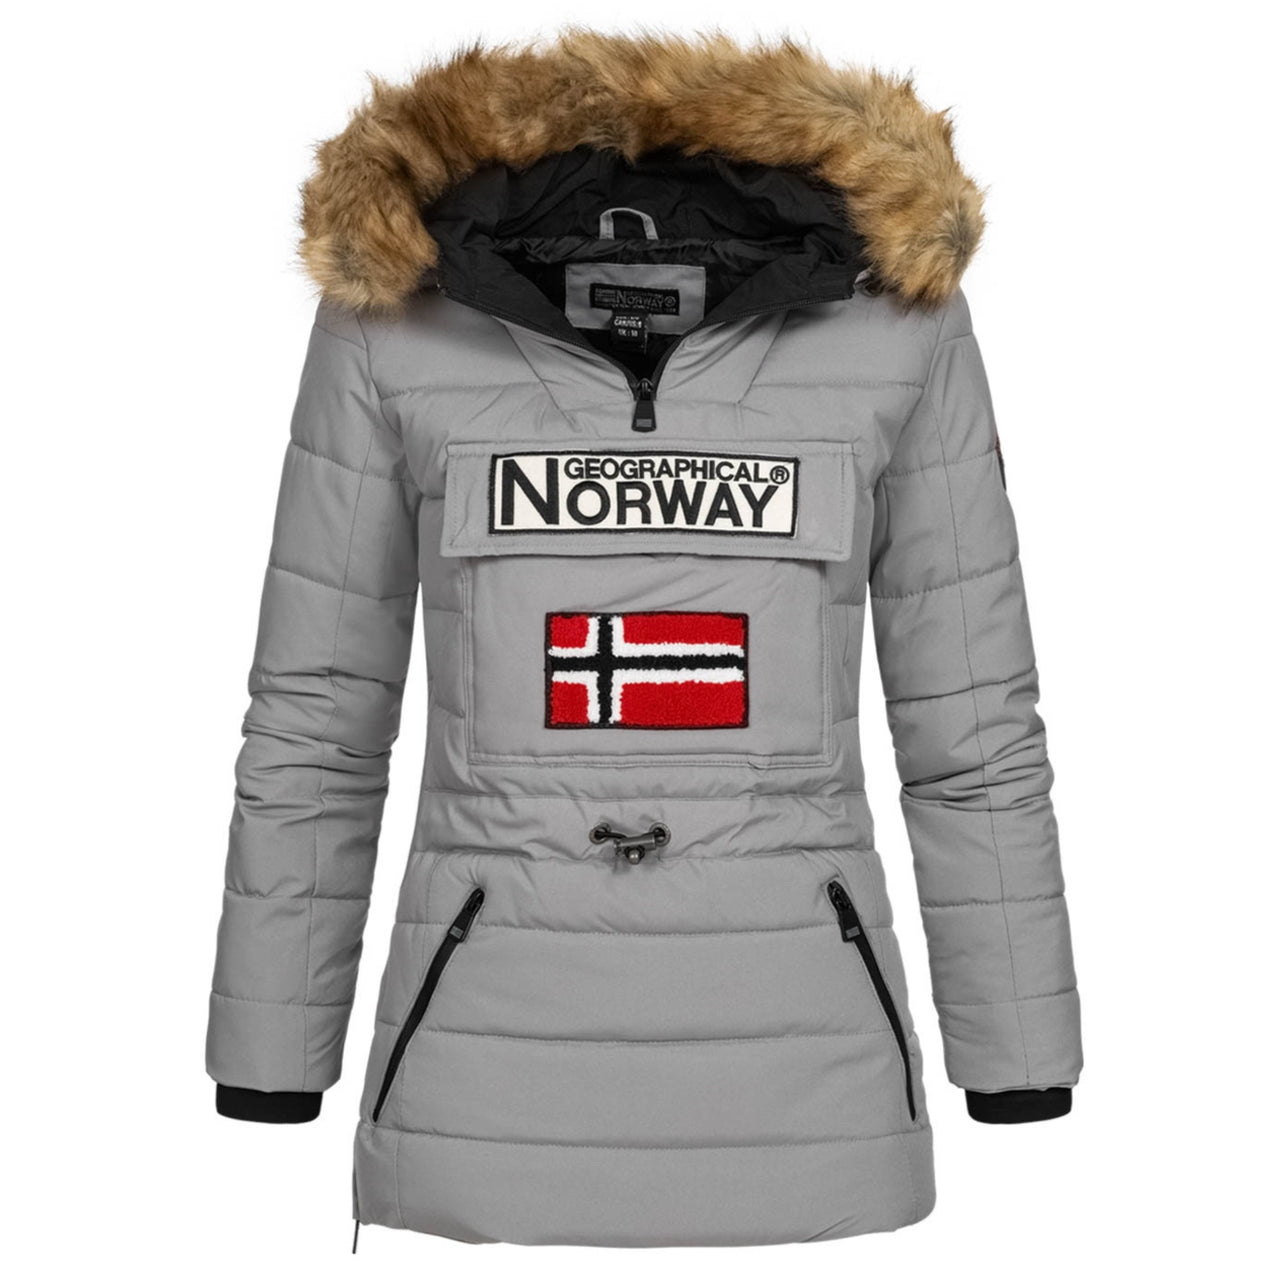 zum Überziehen – Norway Geographical Jacken